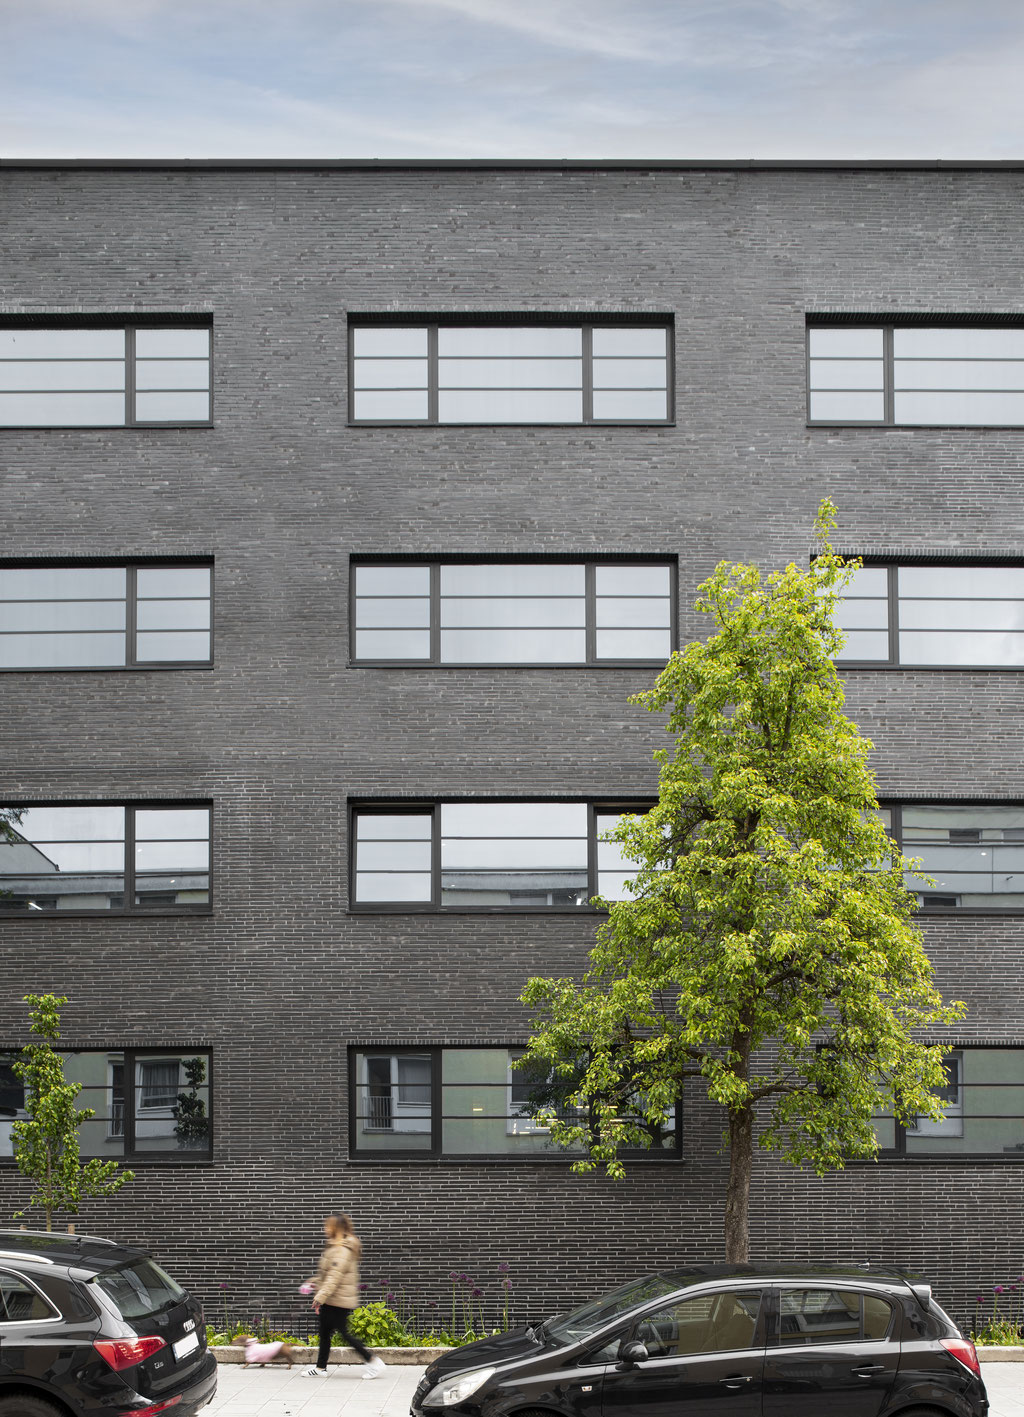 Streitfeld Lofts / München / Binnberg Architekturentwicklung / 2020